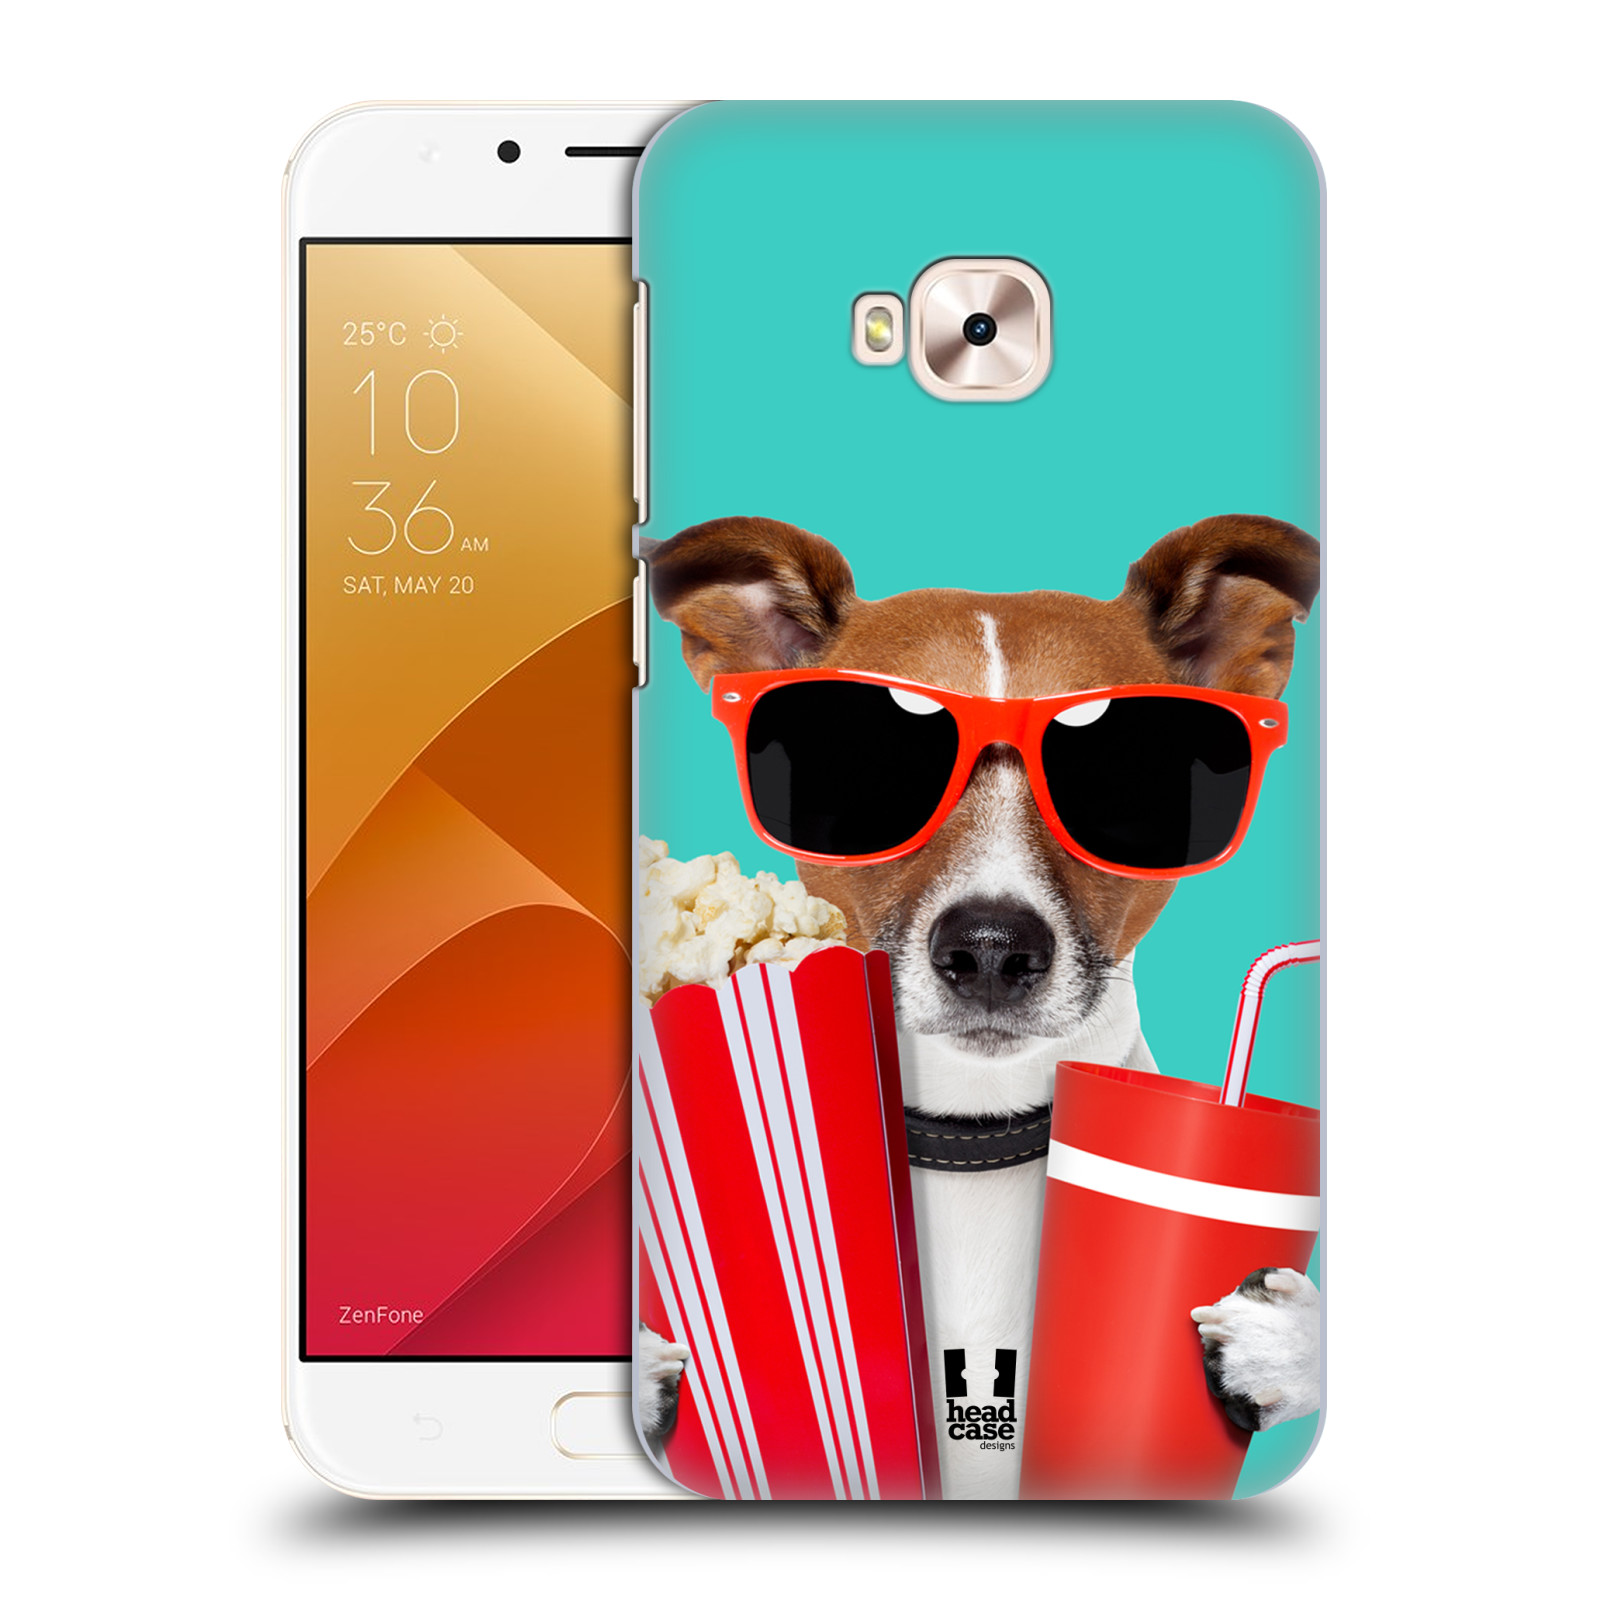 HEAD CASE plastový obal na mobil Asus Zenfone 4 Selfie Pro ZD552KL vzor Legrační zvířátka pejsek v kině s popkornem